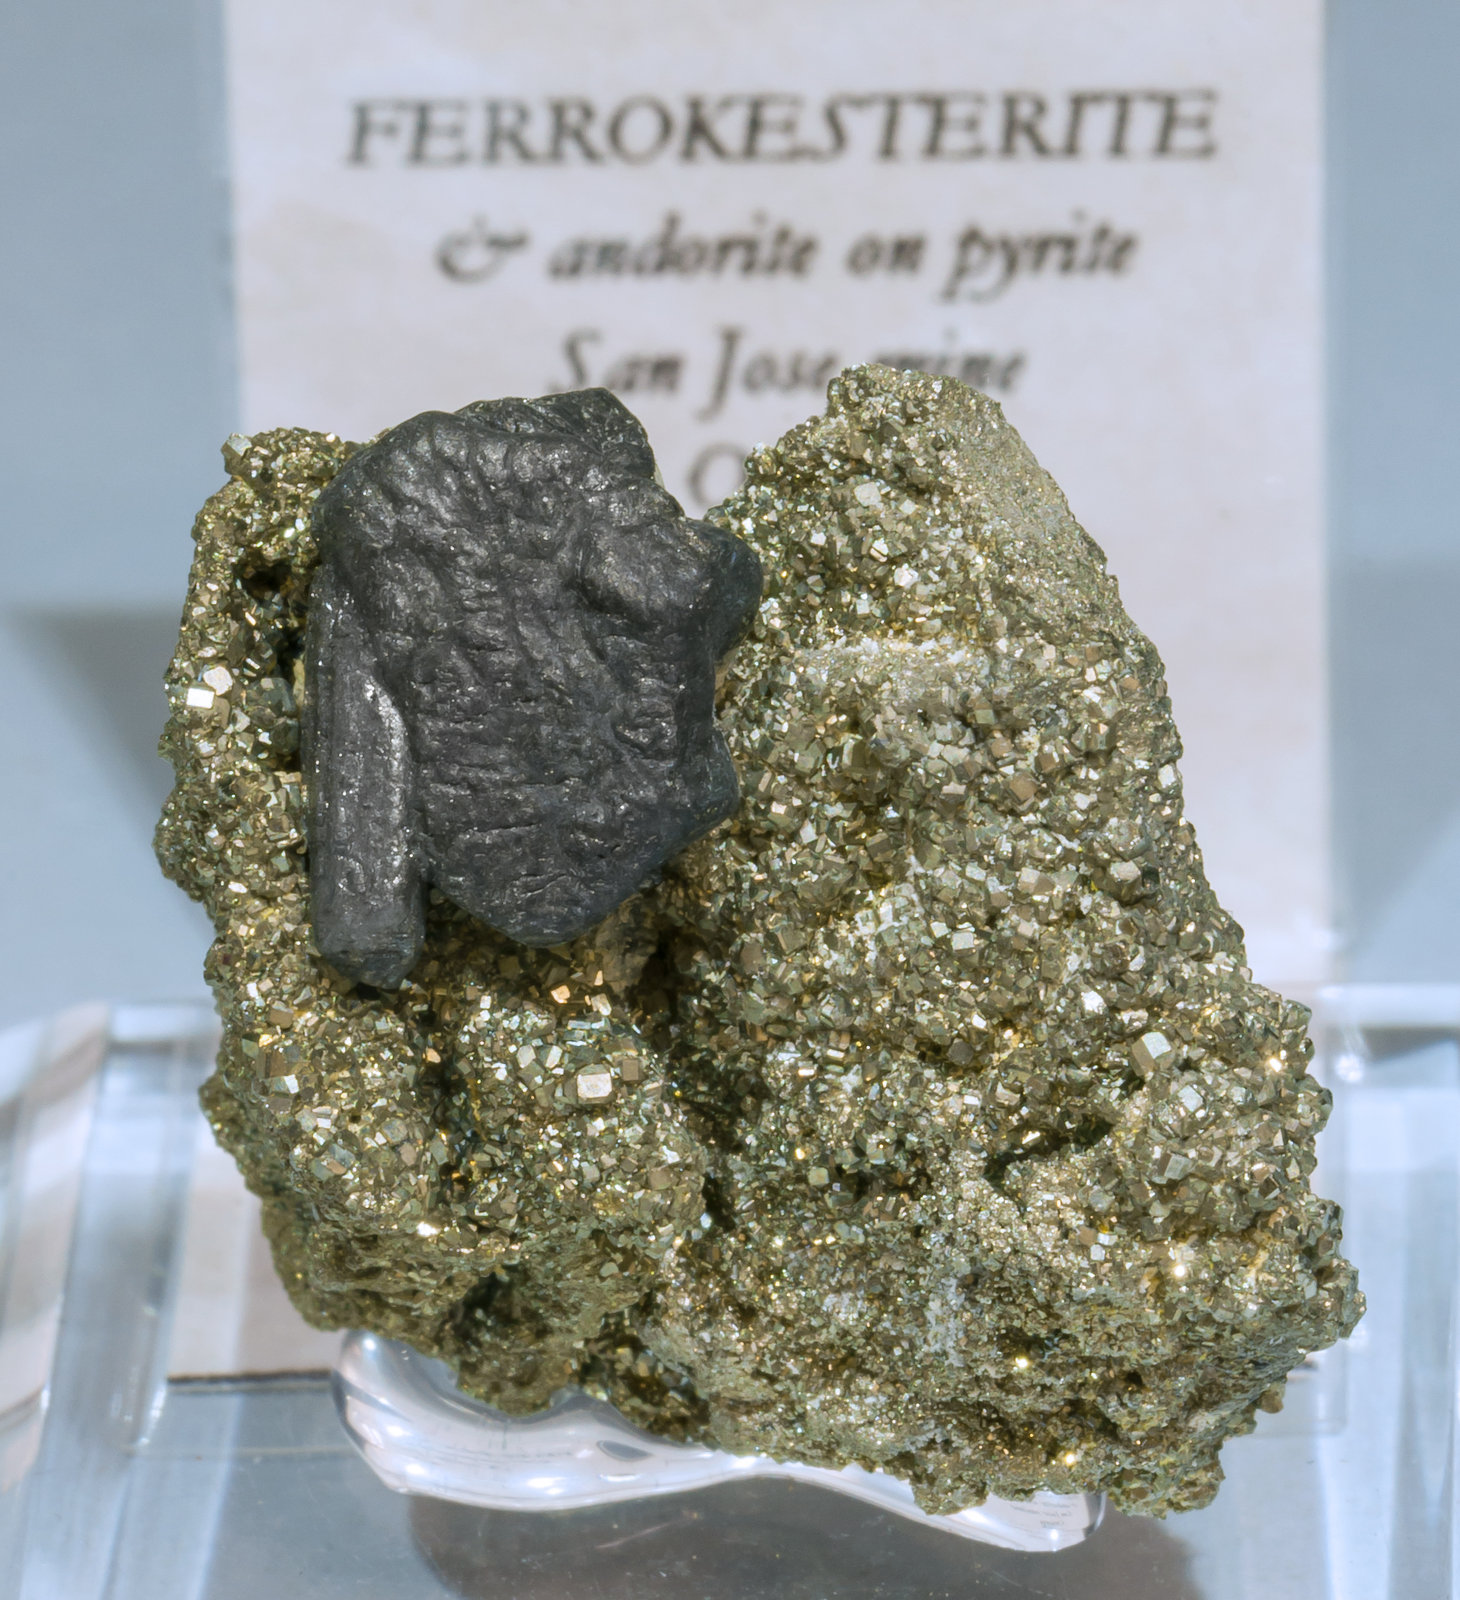 specimens/s_imagesAL4/Ferrokesterite-TT87AL4f2.jpg